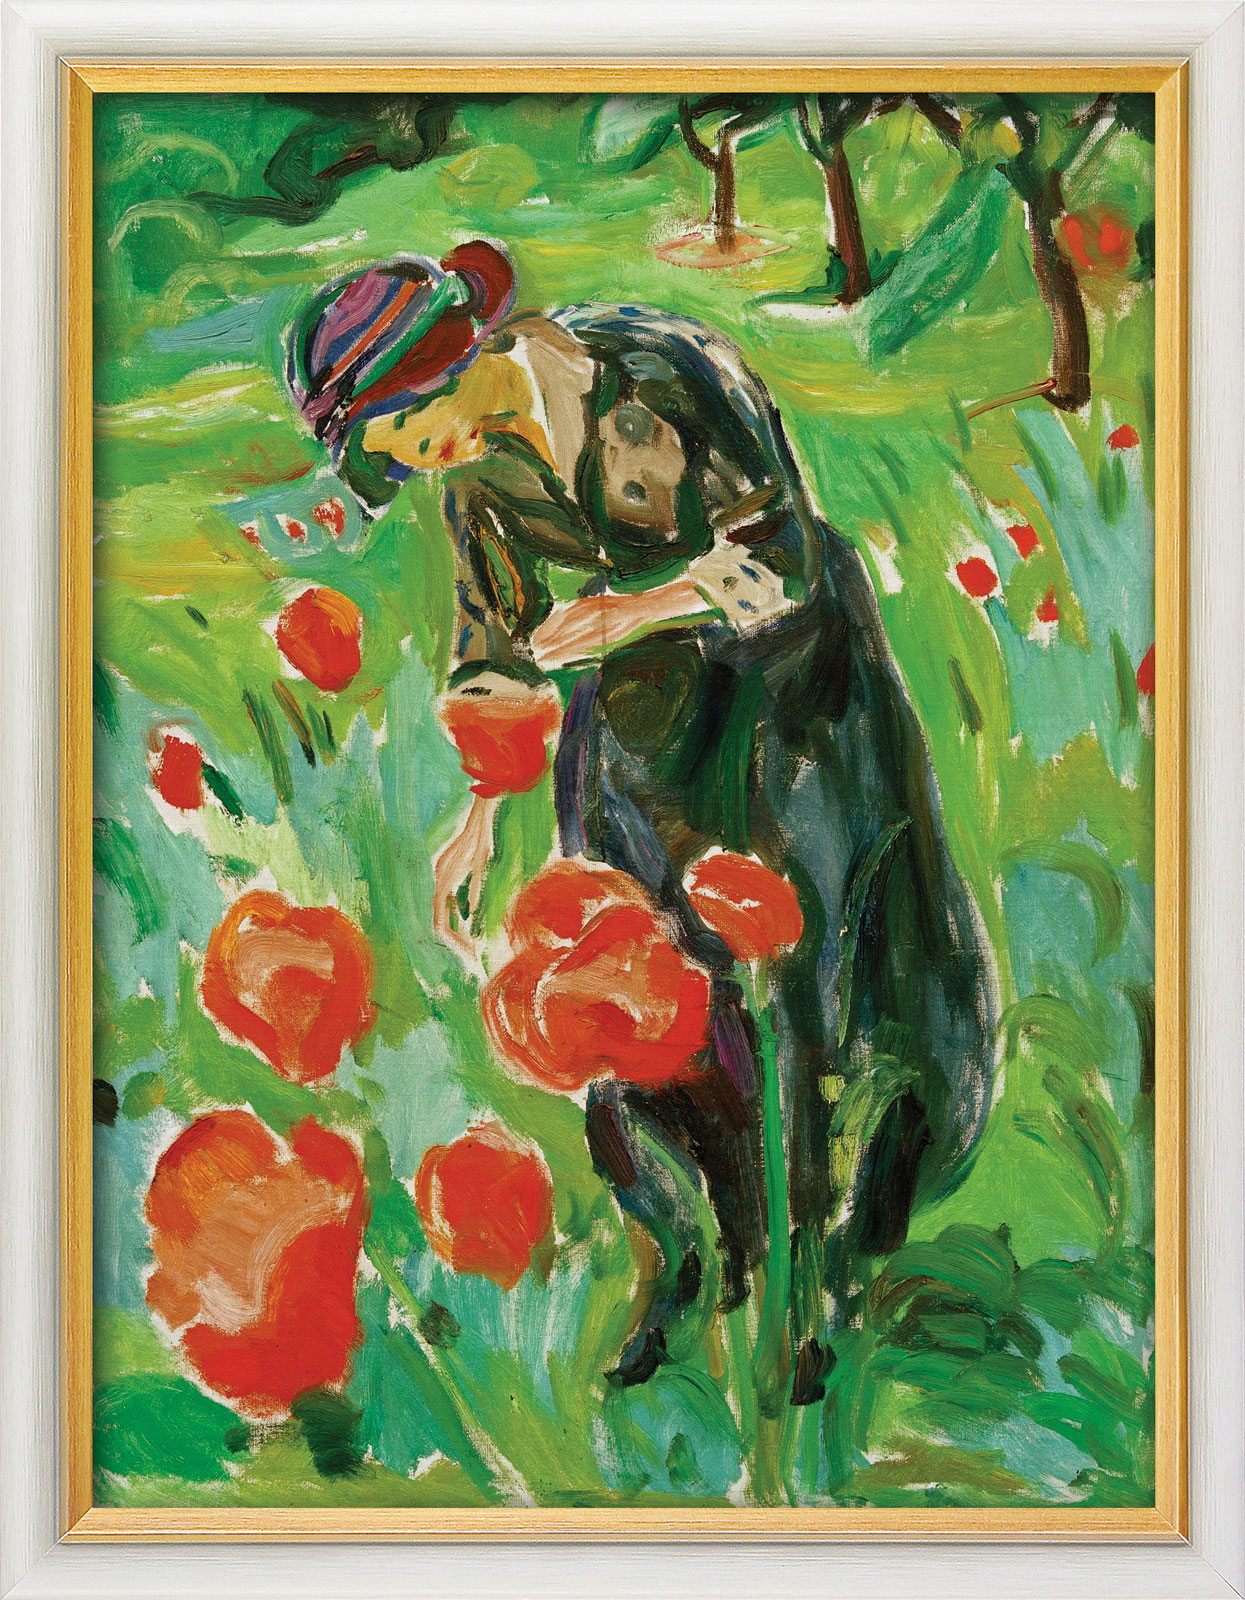 Bild "Frau mit Mohnblumen" (1918/19), gerahmt von Edvard Munch